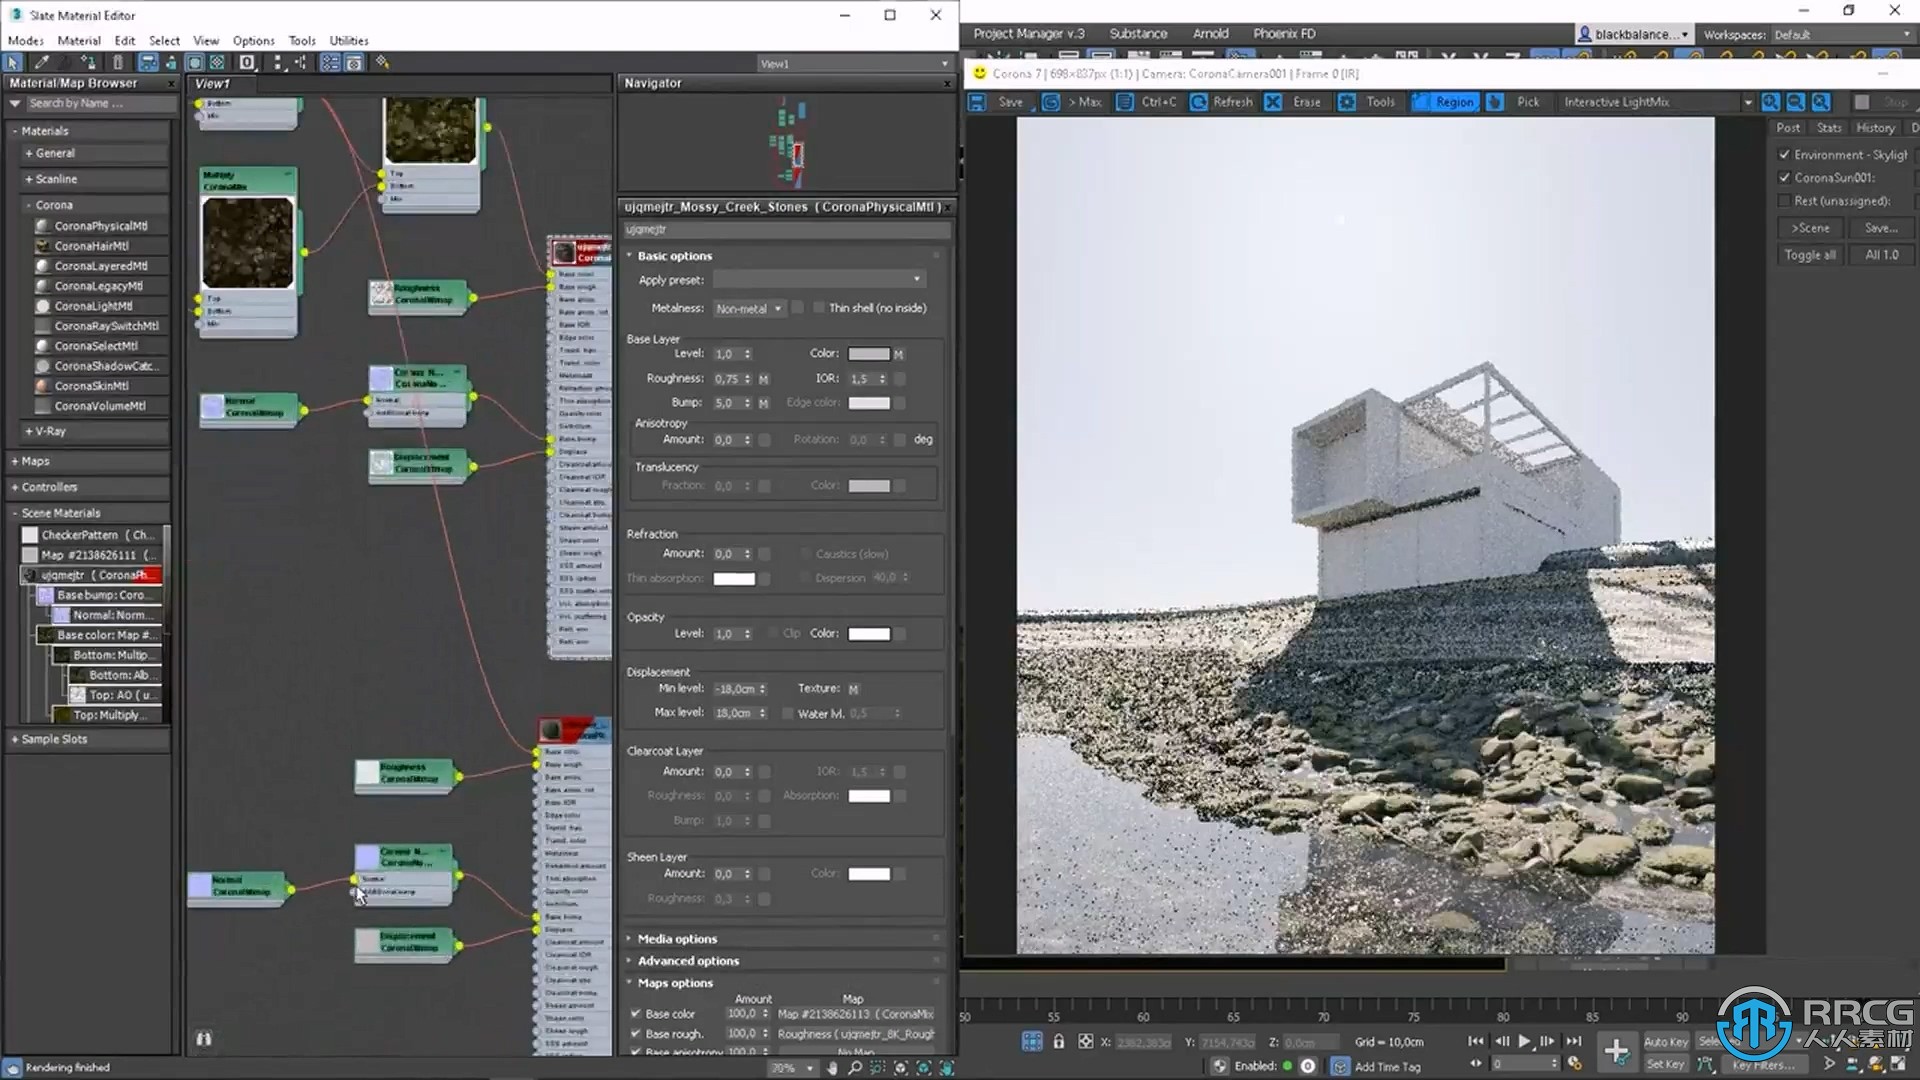 【中文字幕】3dsmax高级建筑景观可视化设计视频教程